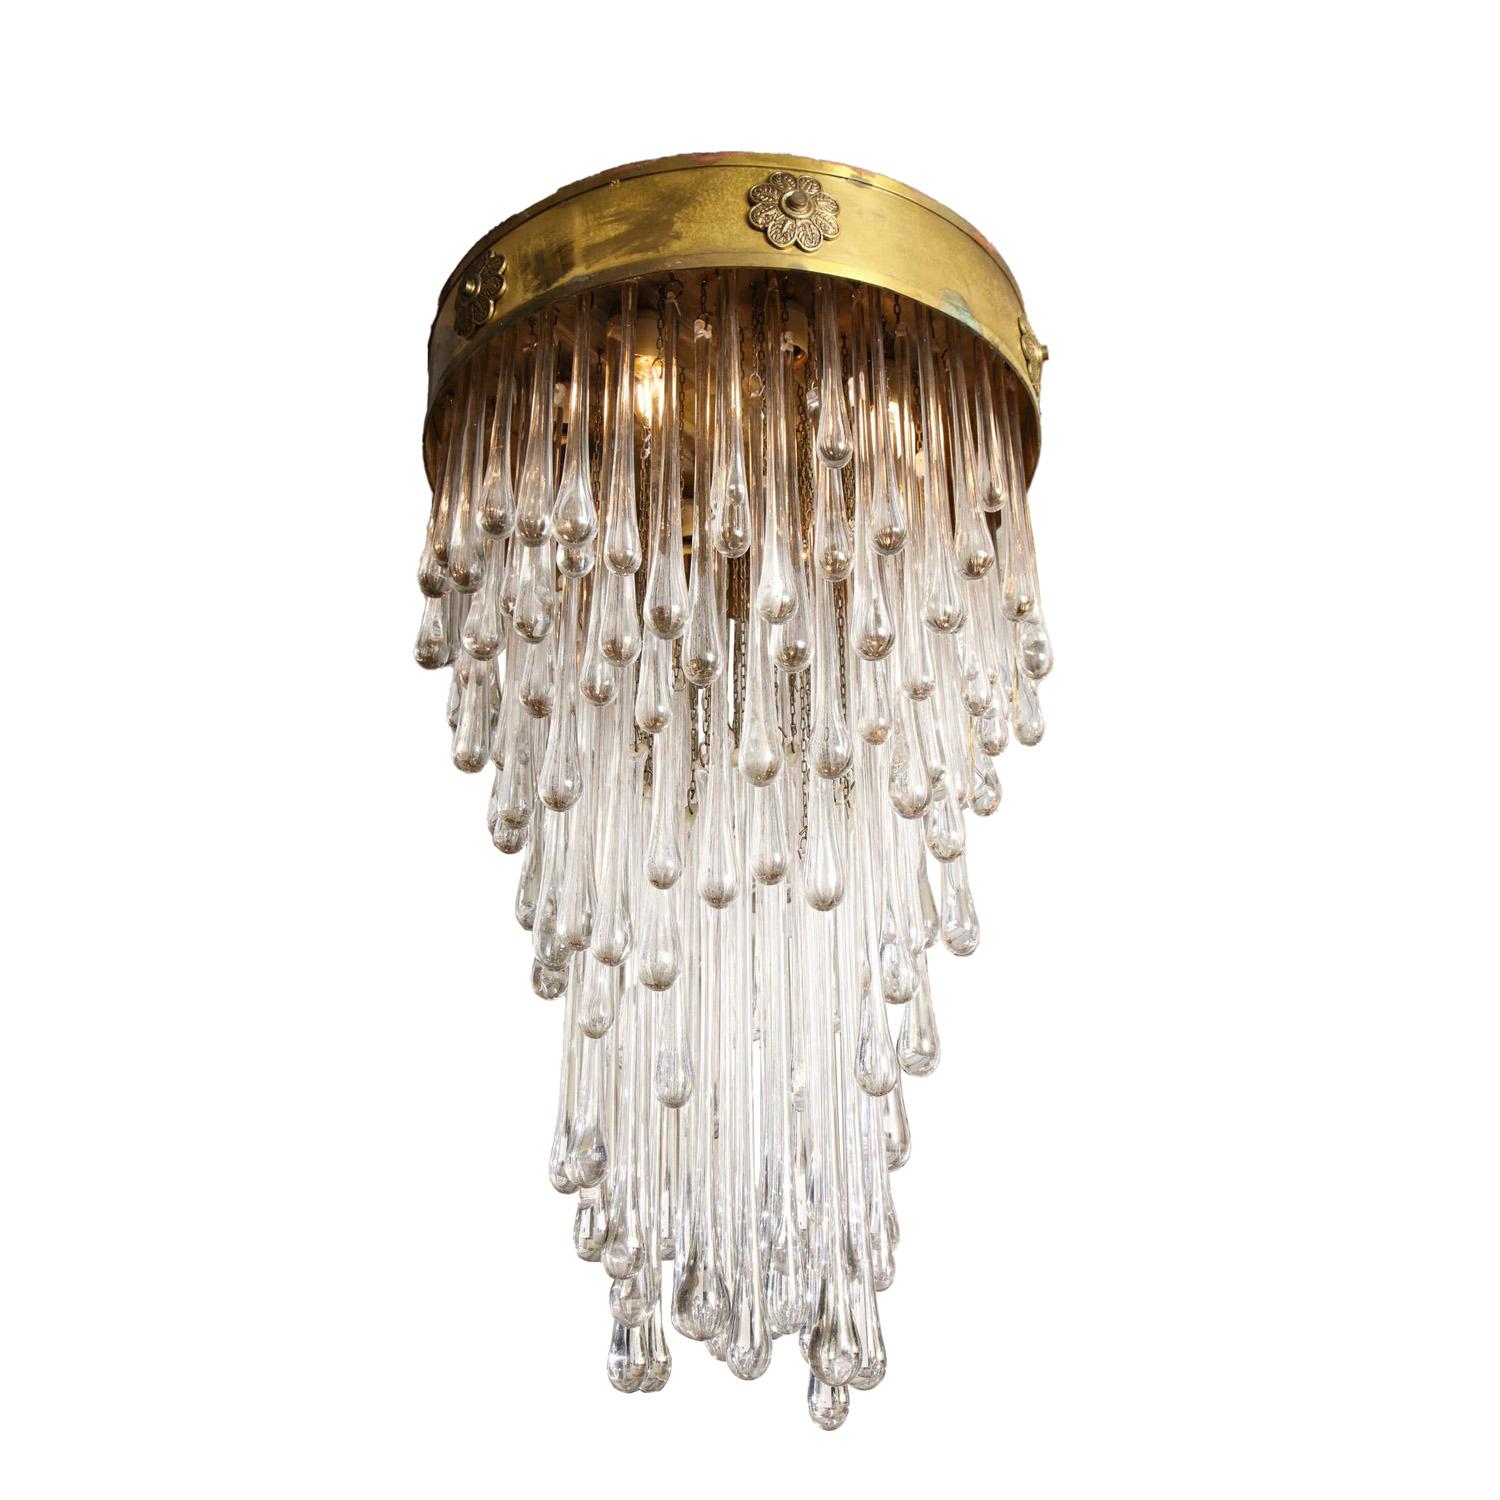 Einzigartiger Murano-Kunstglas-Kronleuchter mit antikem Messinggestell und Medaillons. Diese Leuchte wurde von Venini für einen Palast in Biarritz, Frankreich, hergestellt.

Italienisch, 1950er Jahre.

Die Patina des Messings auf diesem Ständer